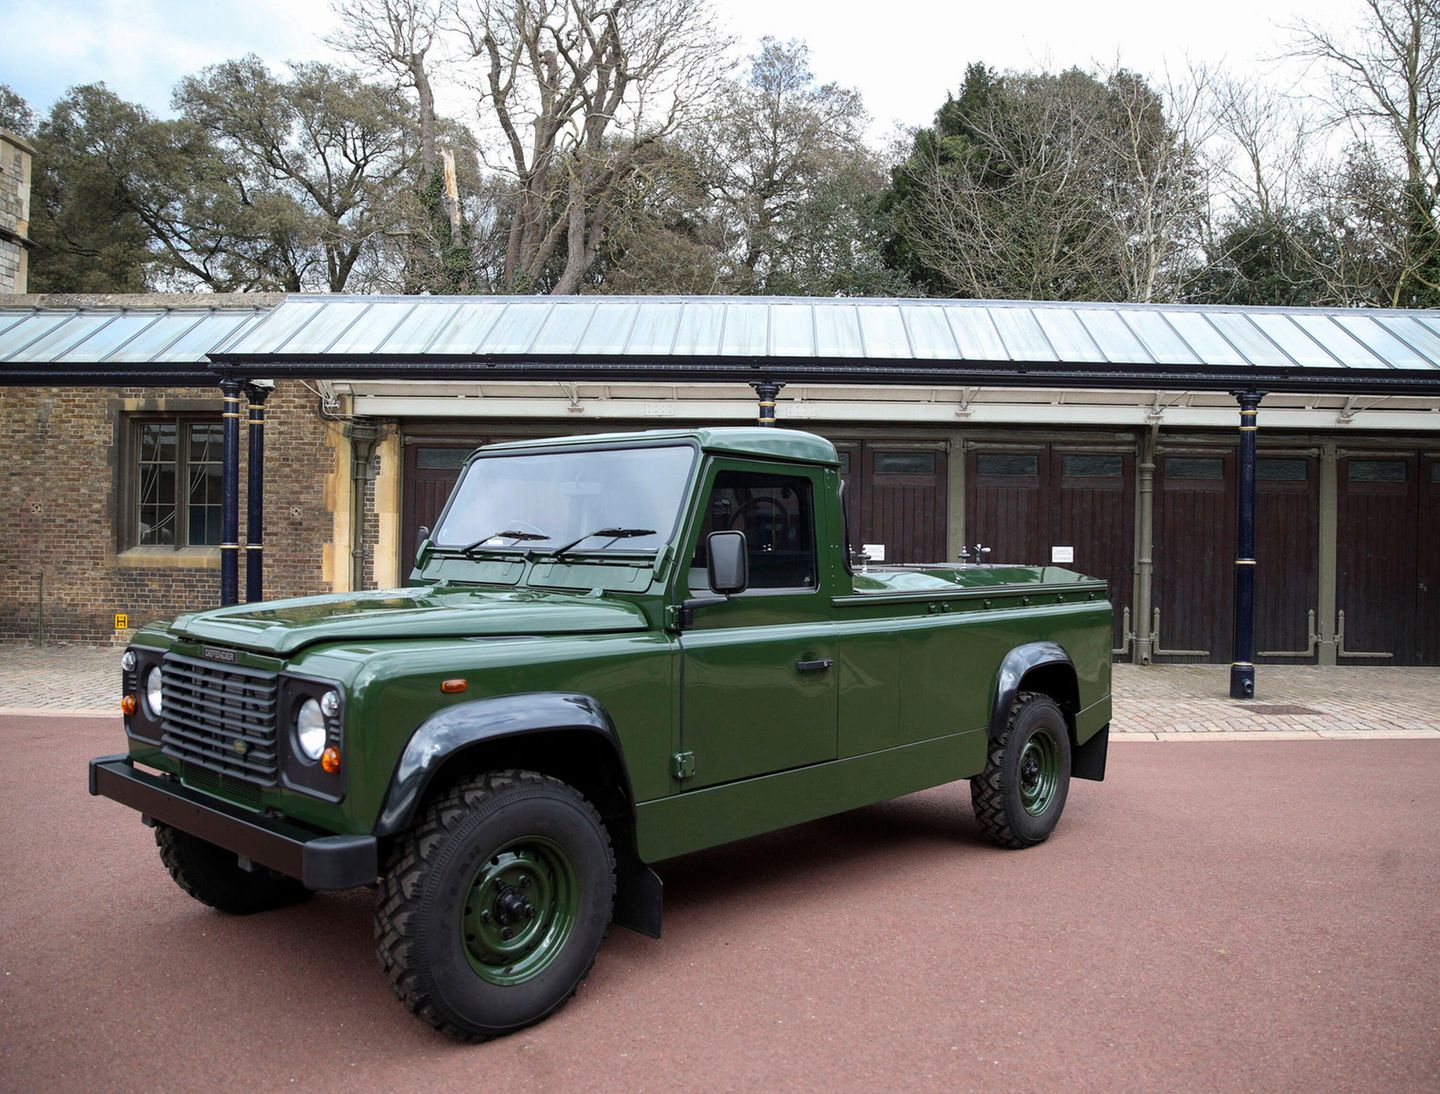 Der Land Rover wurde speziell für die Prozession von Prinz Philip konzipiert